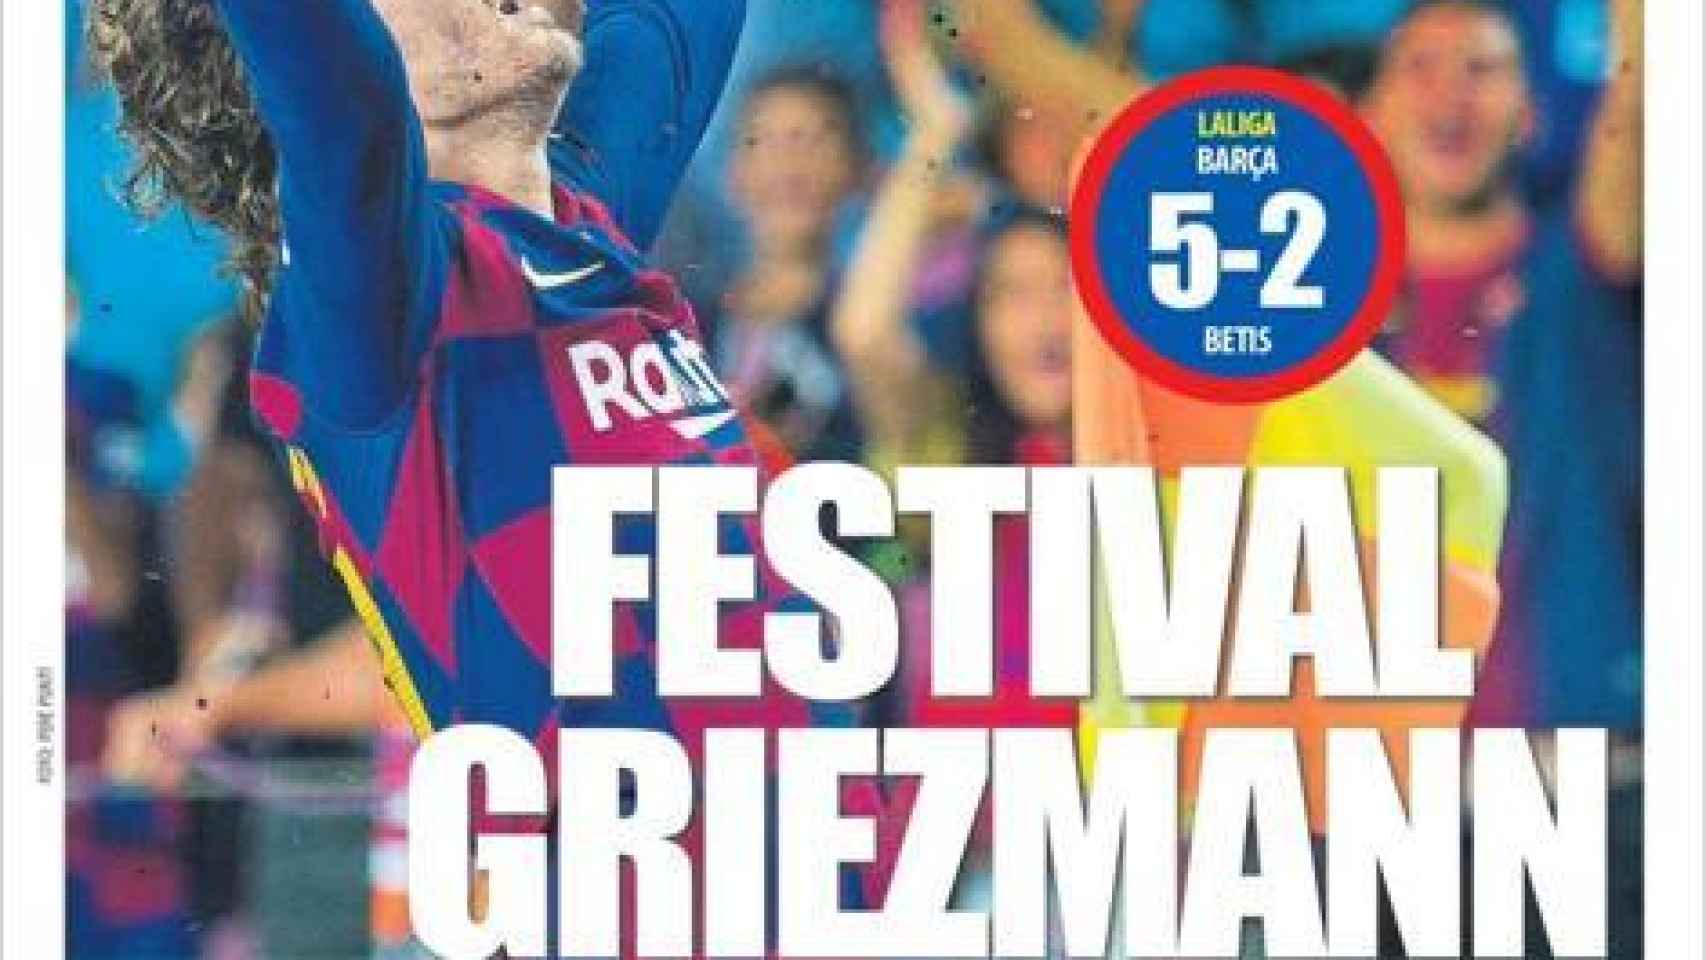 La portada del diario Mundo Deportivo (26/08/2019)